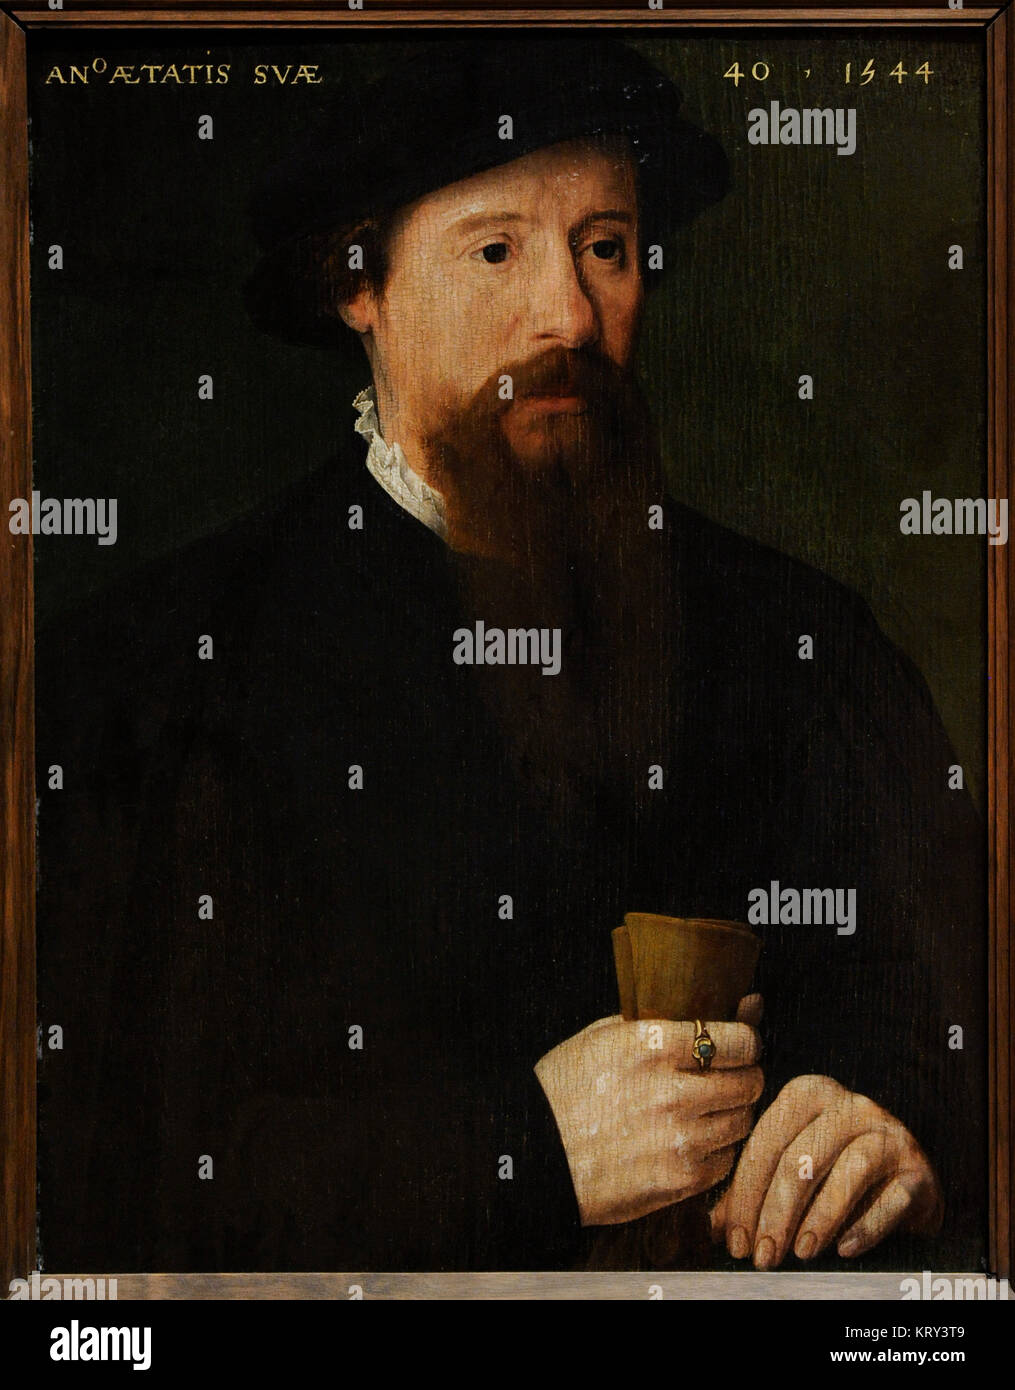 Pieter Pourbus (1523-1584). Peintre hollandais. Portrait d'un homme, 1544. Galerie nationale. Oslo. La Norvège. Banque D'Images